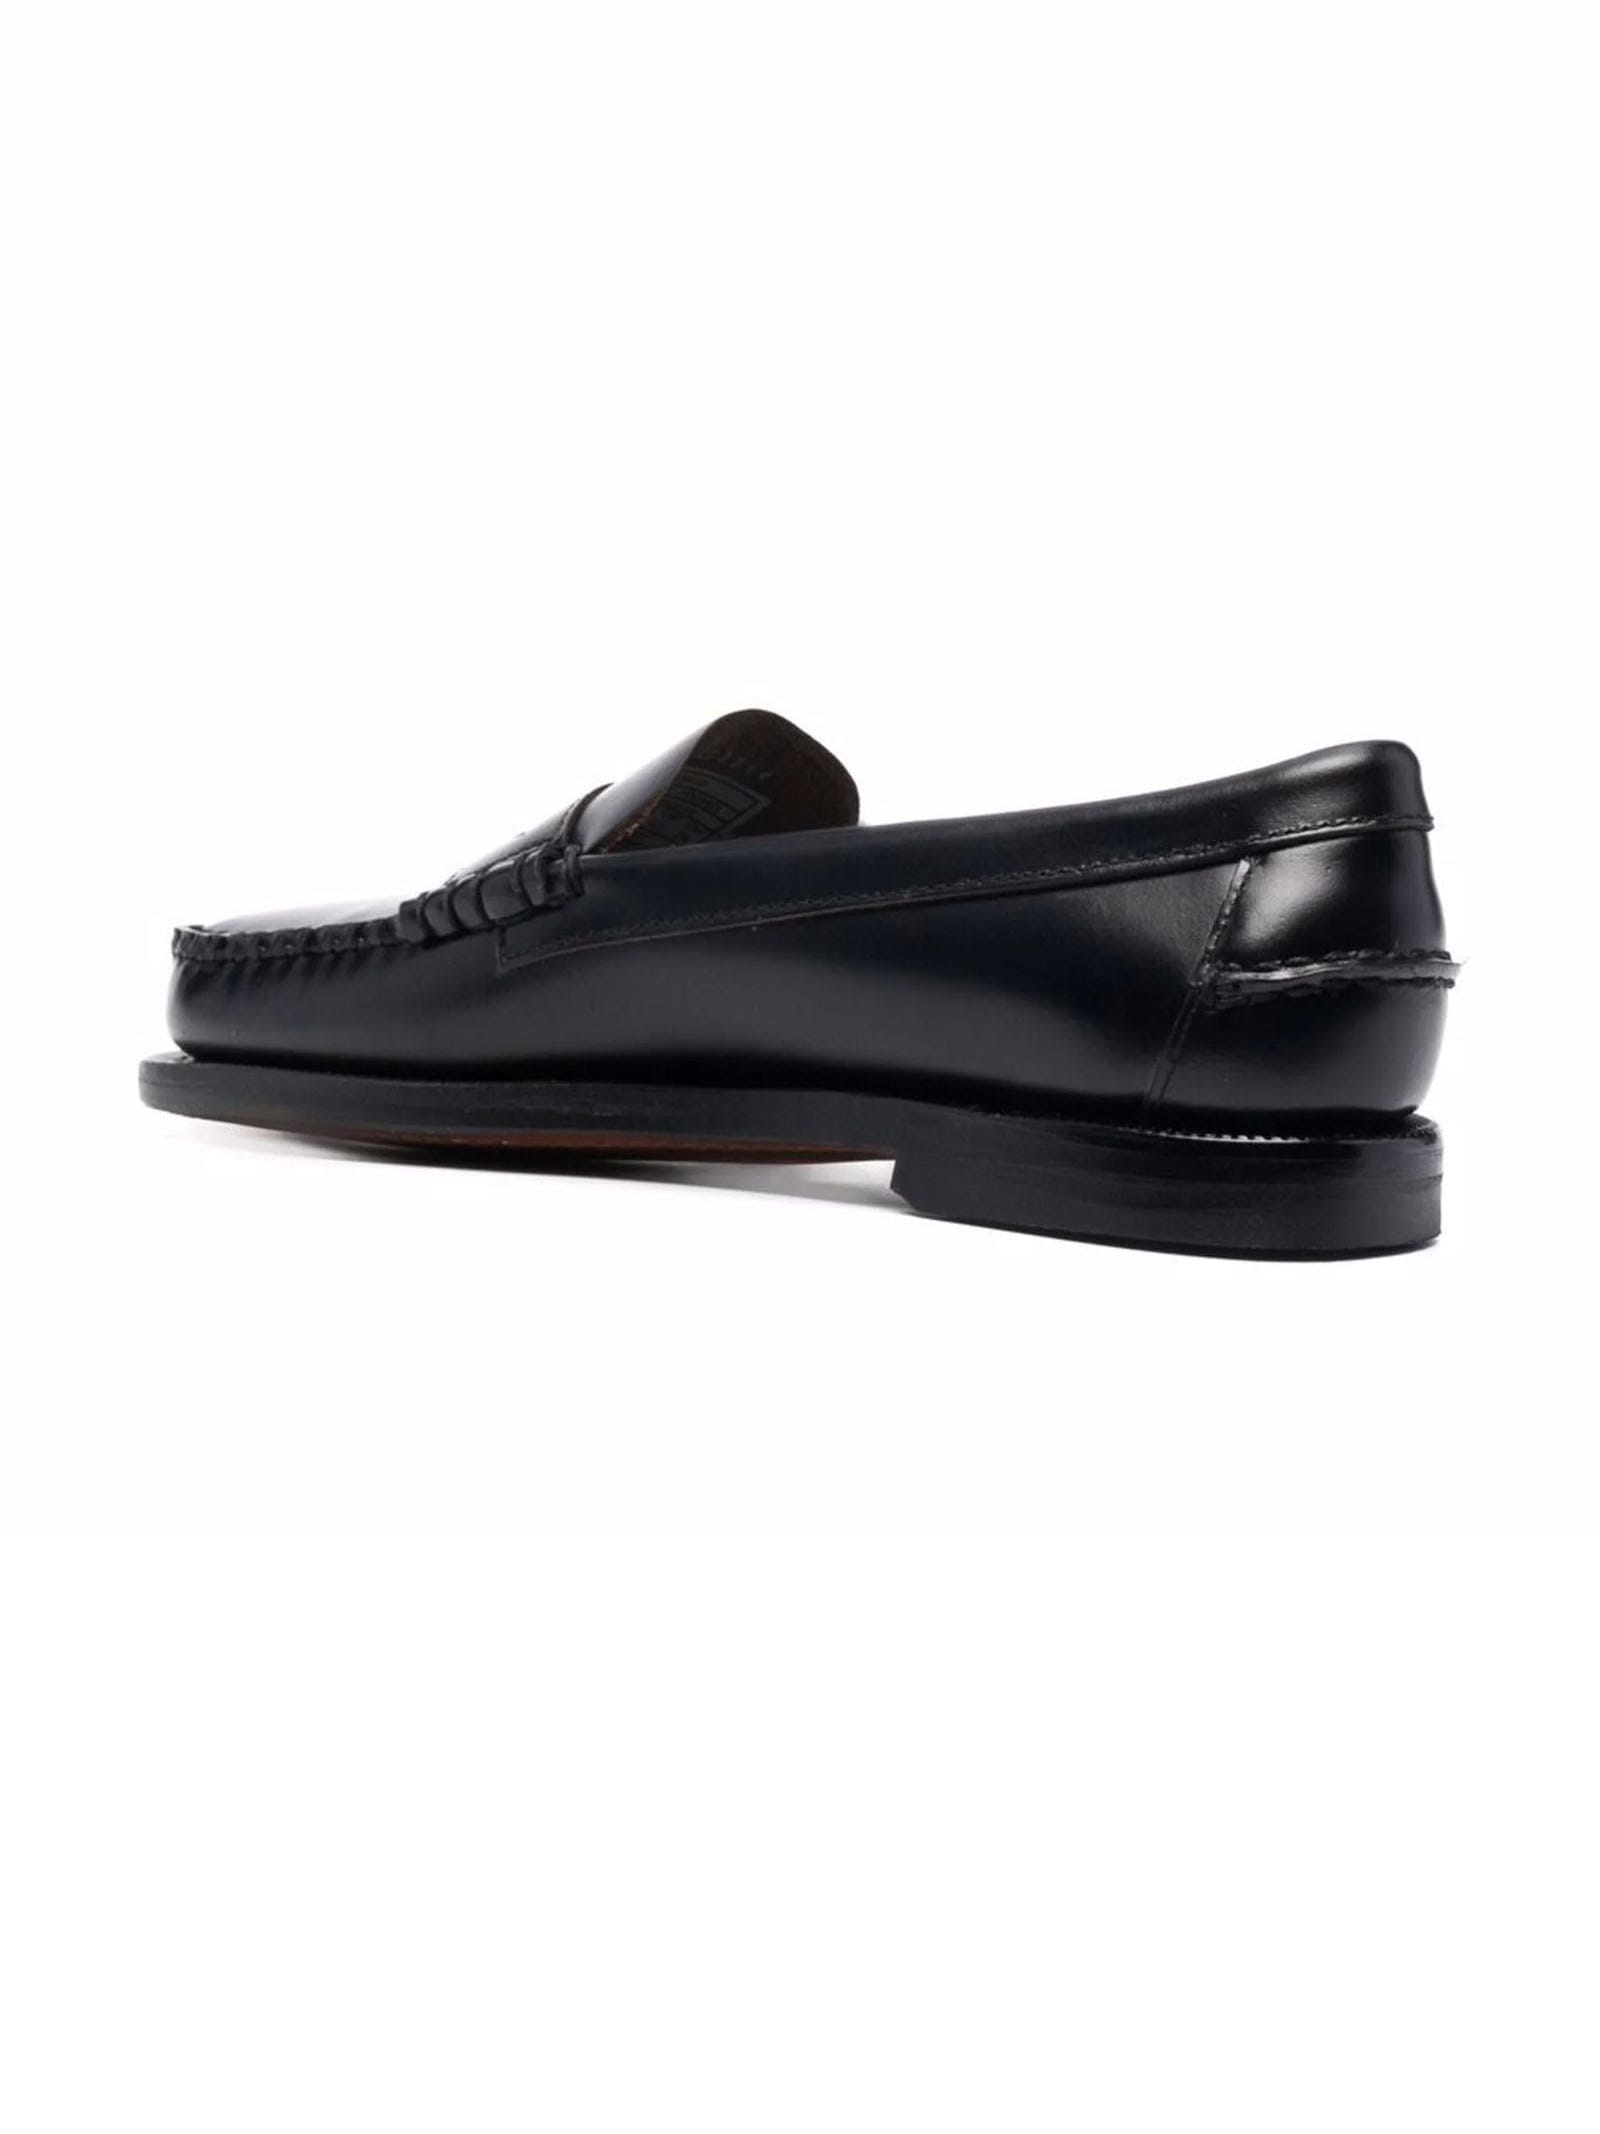 Shop Sebago Black Leather Loafers